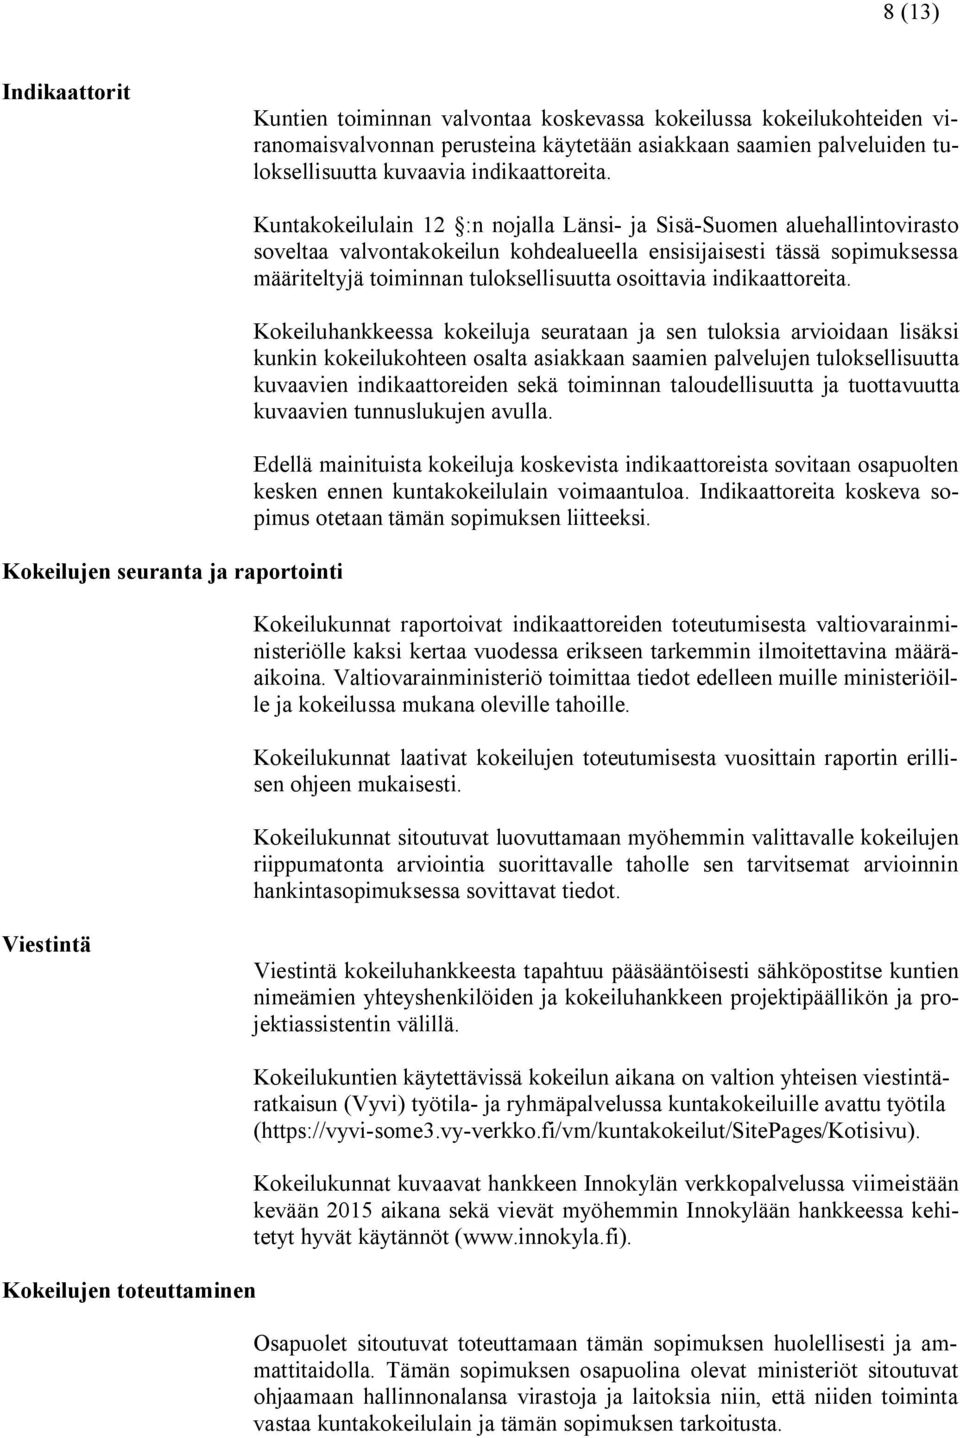 Kokeilujen seuranta ja raportointi Kuntakokeilulain 12 :n nojalla Länsi- ja Sisä-Suomen aluehallintovirasto soveltaa valvontakokeilun kohdealueella ensisijaisesti tässä sopimuksessa määriteltyjä